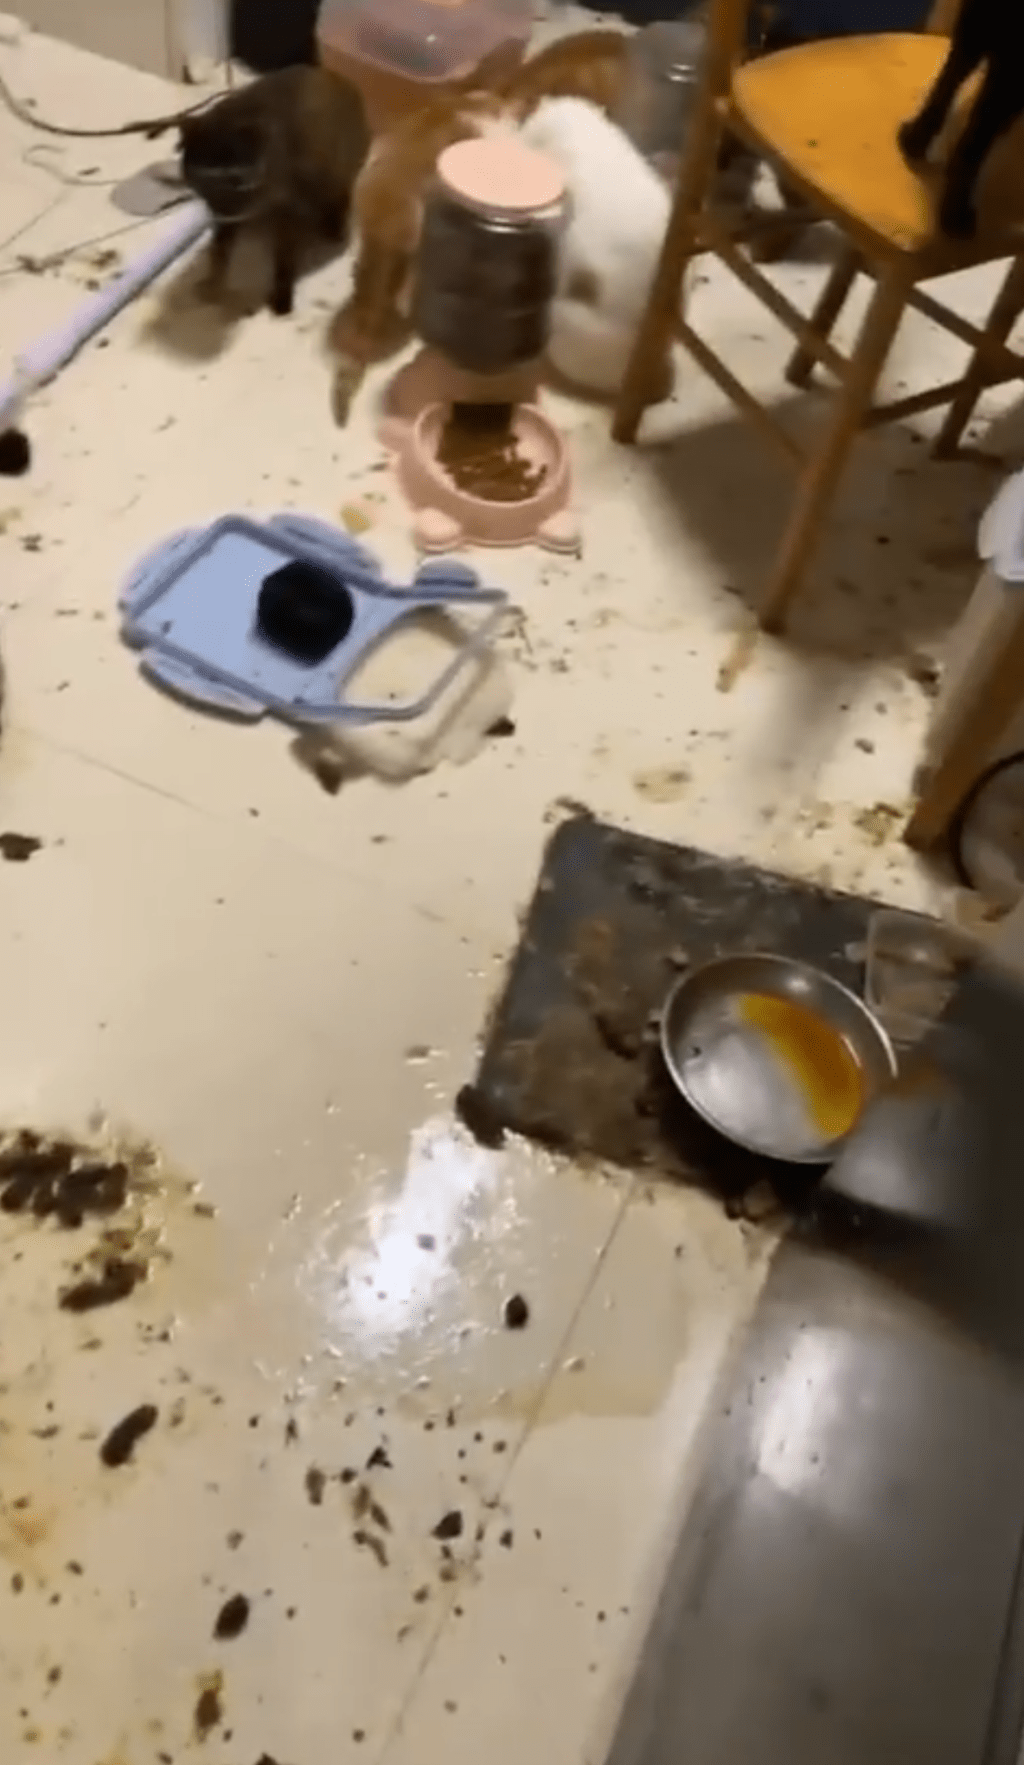 貓糧及糞便混雜在地上。香港拯救貓狗協會片段截圖